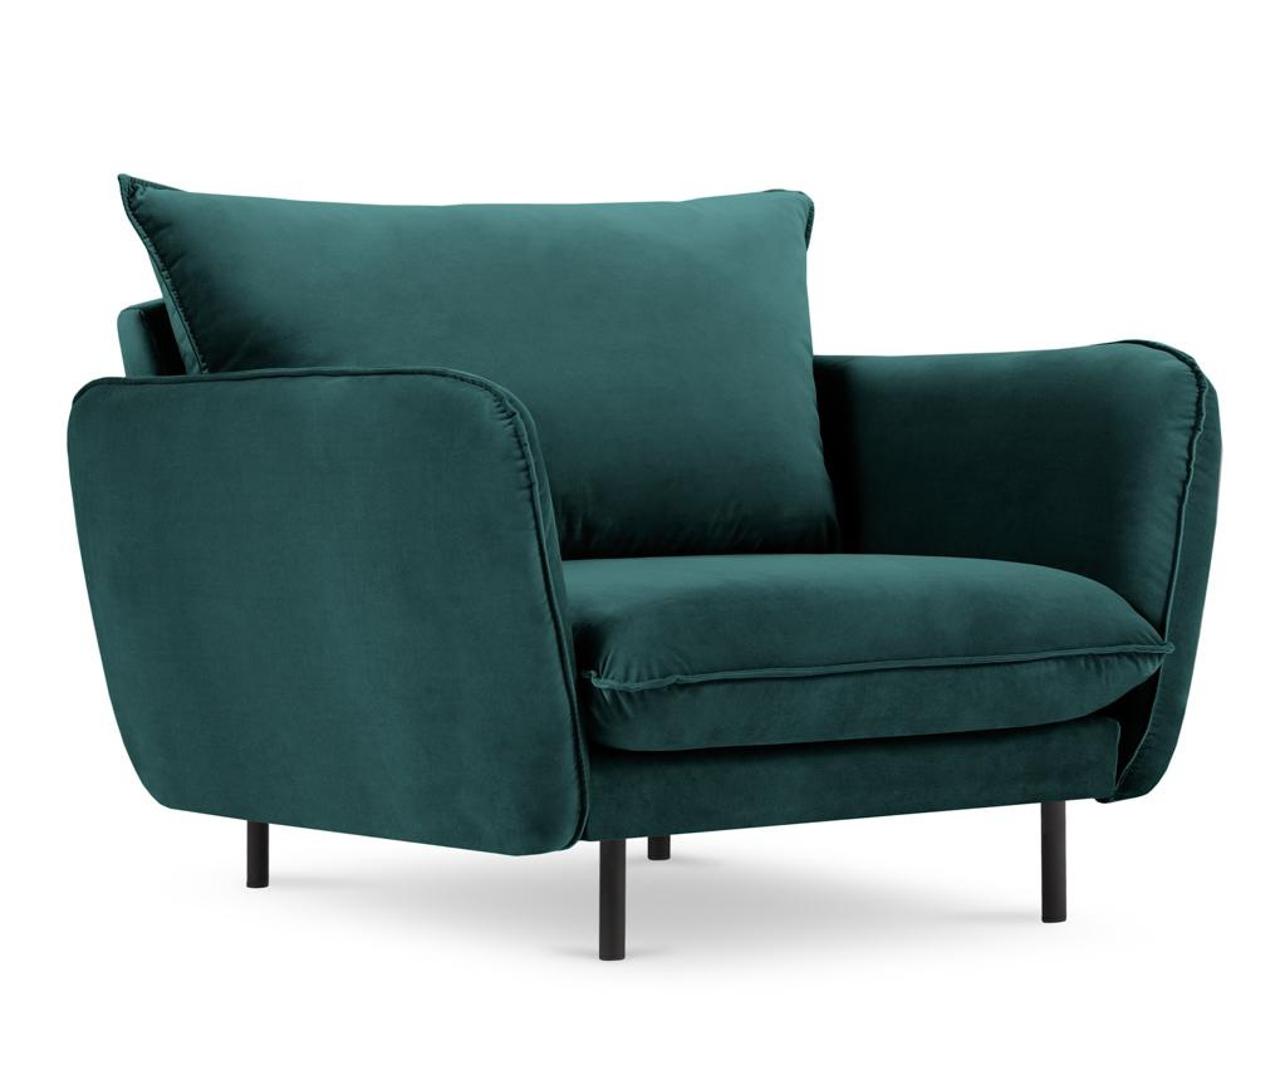 Raskošna fotelja ujedinjuje dva trenda - tamno-zelenu boju i baršunastu tkaninu. Snižena je u web shopu Vivre.hr s 7395 kuna na 3400 kn